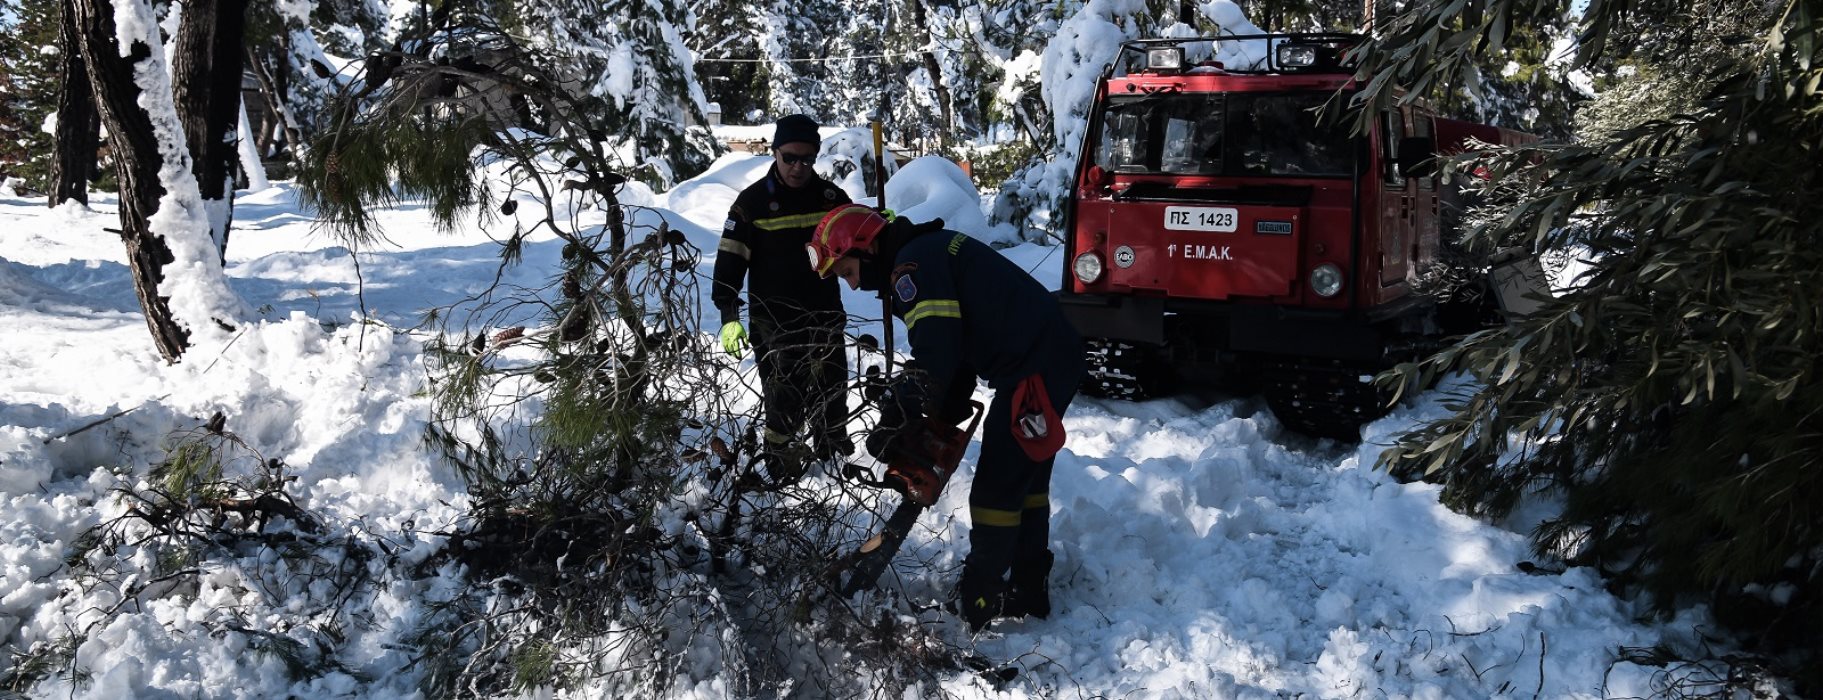 Εύβοια: Άνδρας έχασε την ζωή του στις Κεχριές – Καταπλακώθηκε από δέντρο